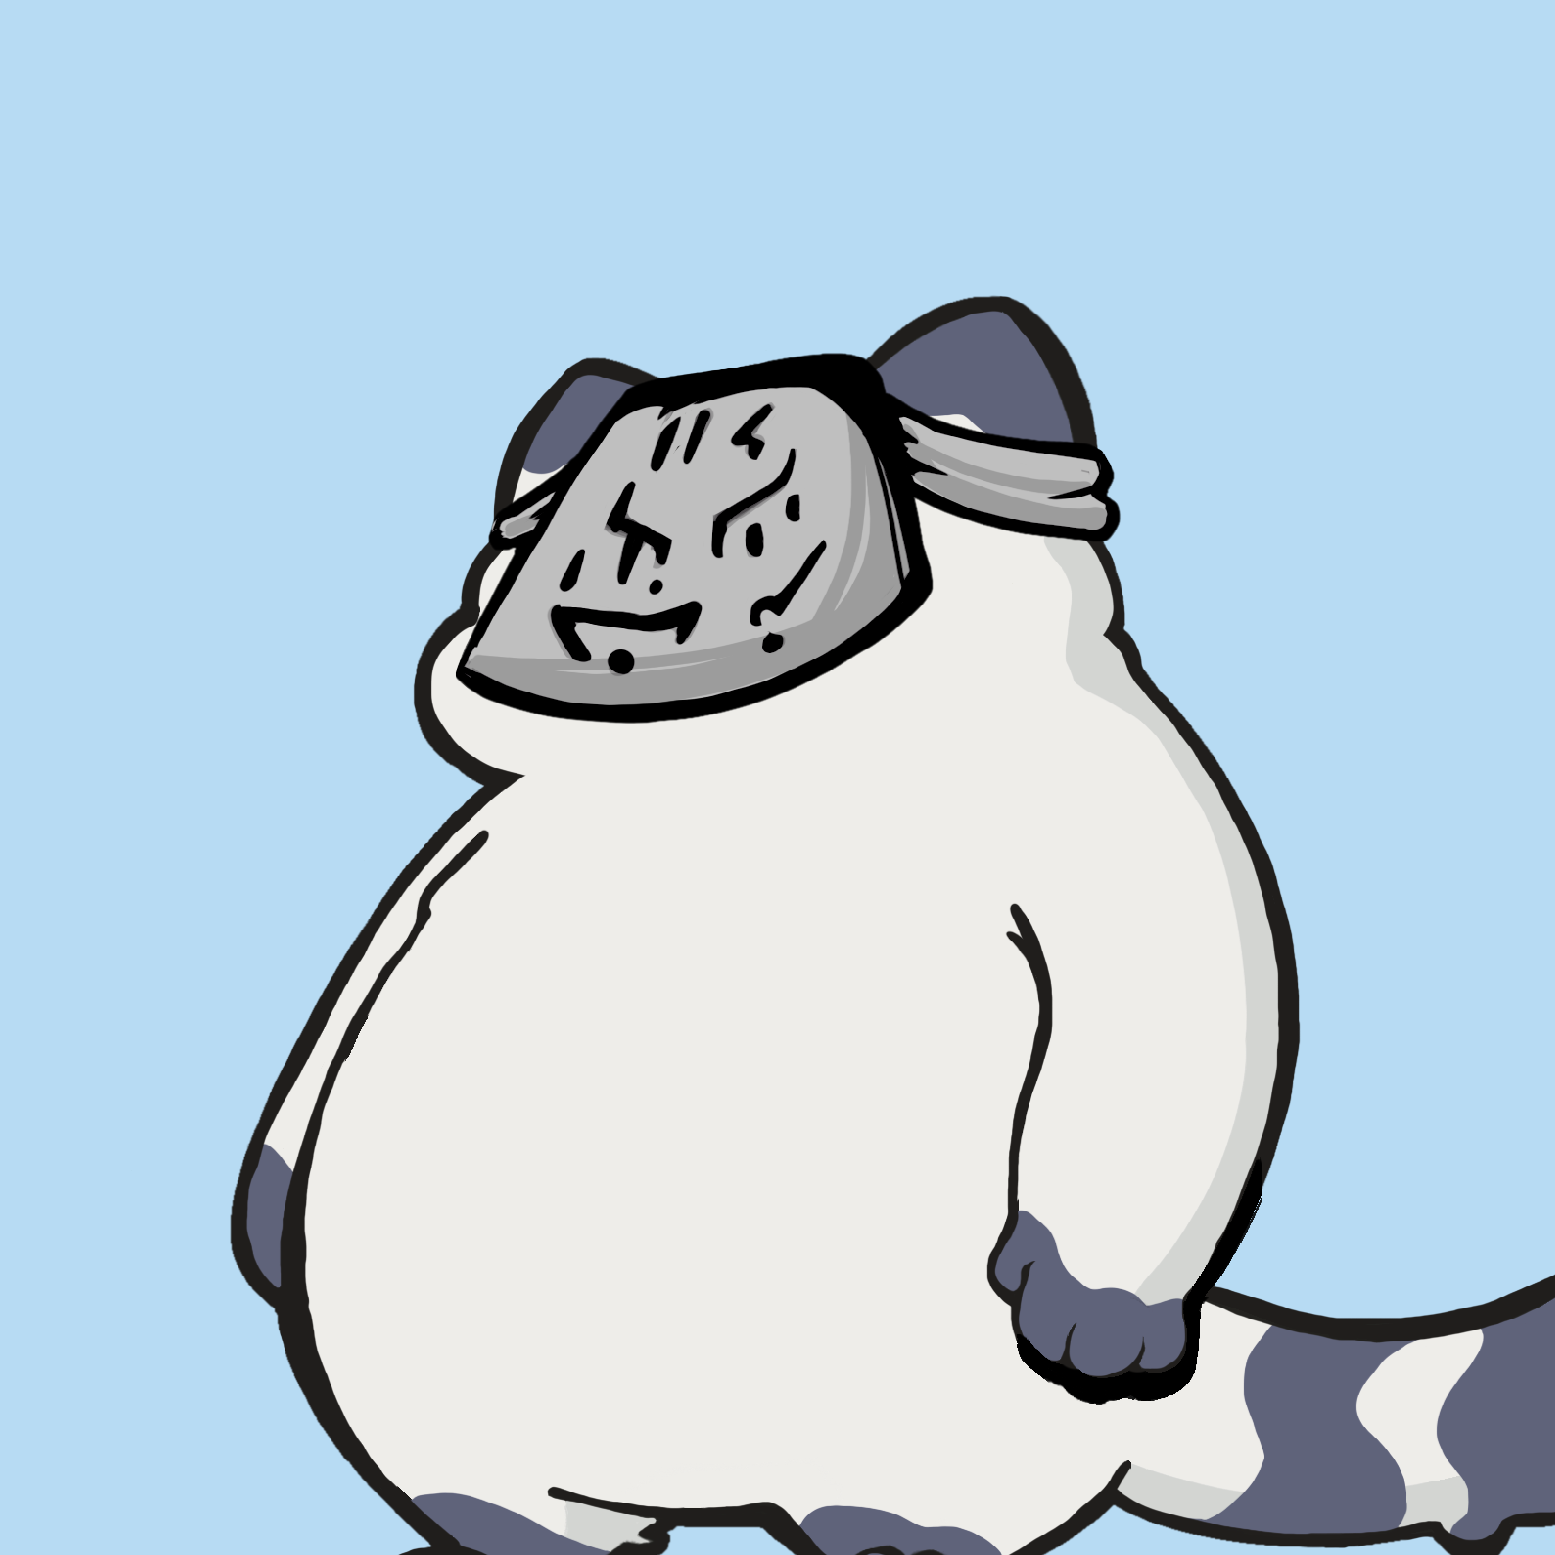 Degen Fat Cat the 3262nd